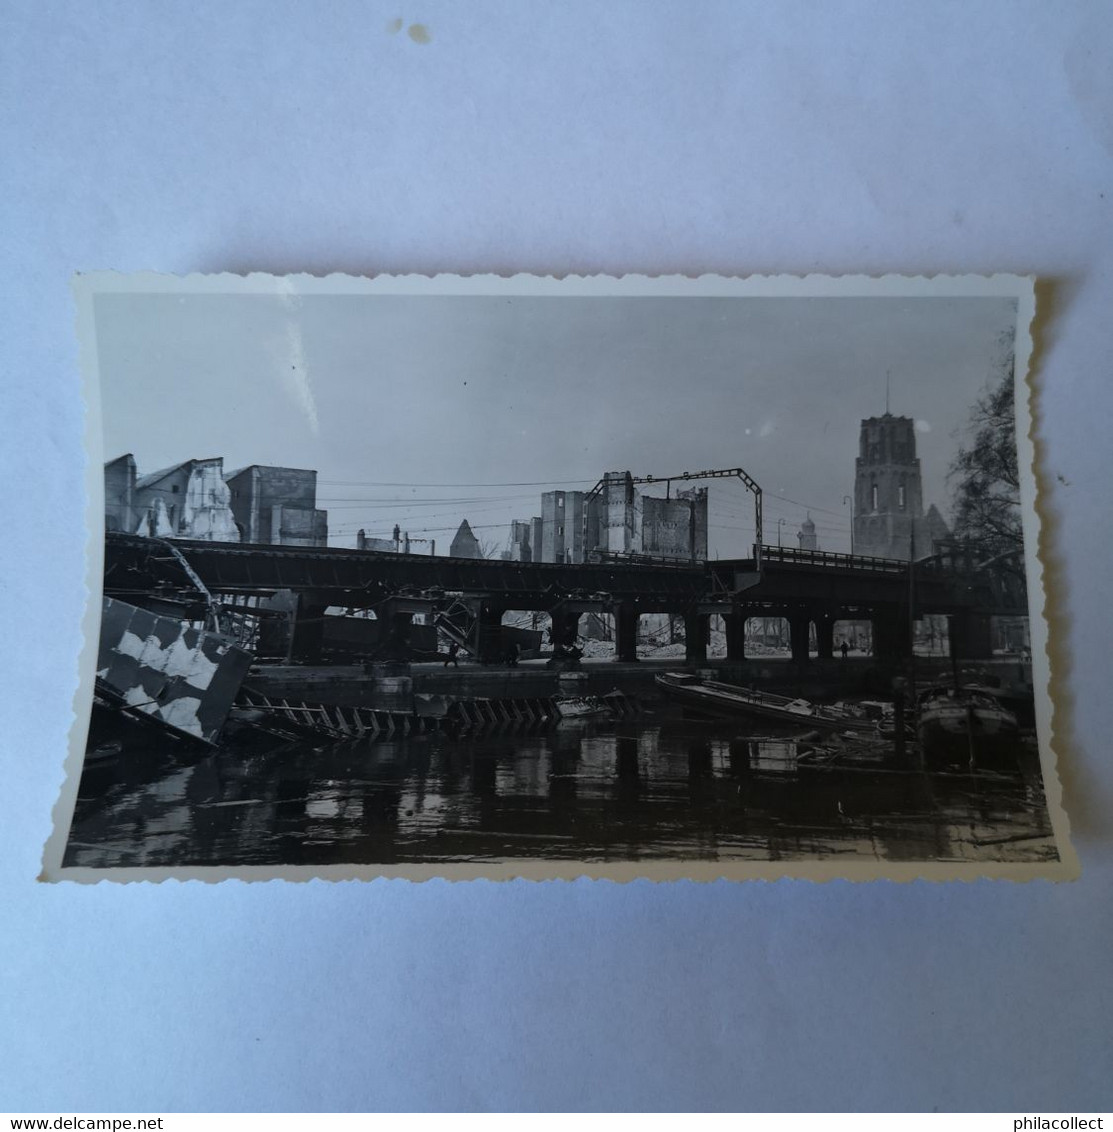 WWII // Bombardement Rotterdam // Orginele Foto // Kolkje - Viaduct 19?? - Rotterdam